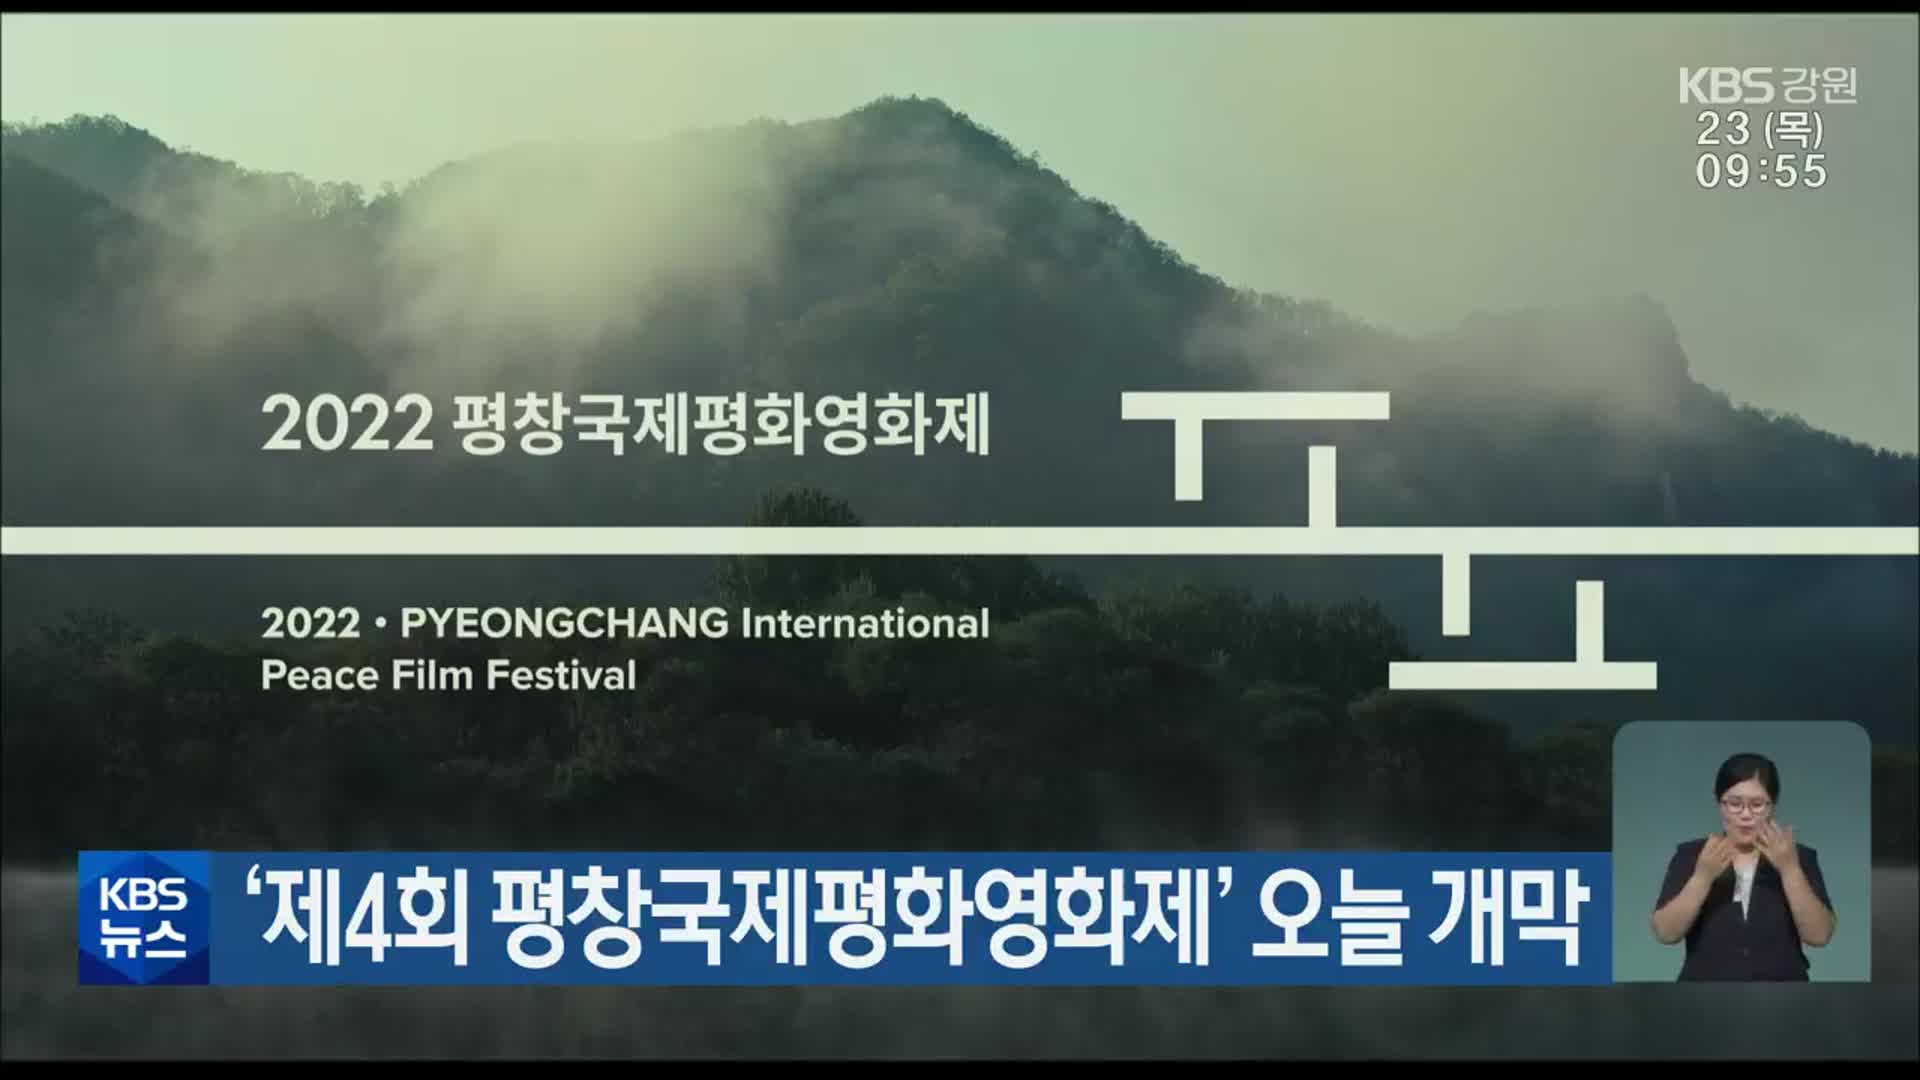 ‘제4회 평창국제평화영화제’ 오늘 개막